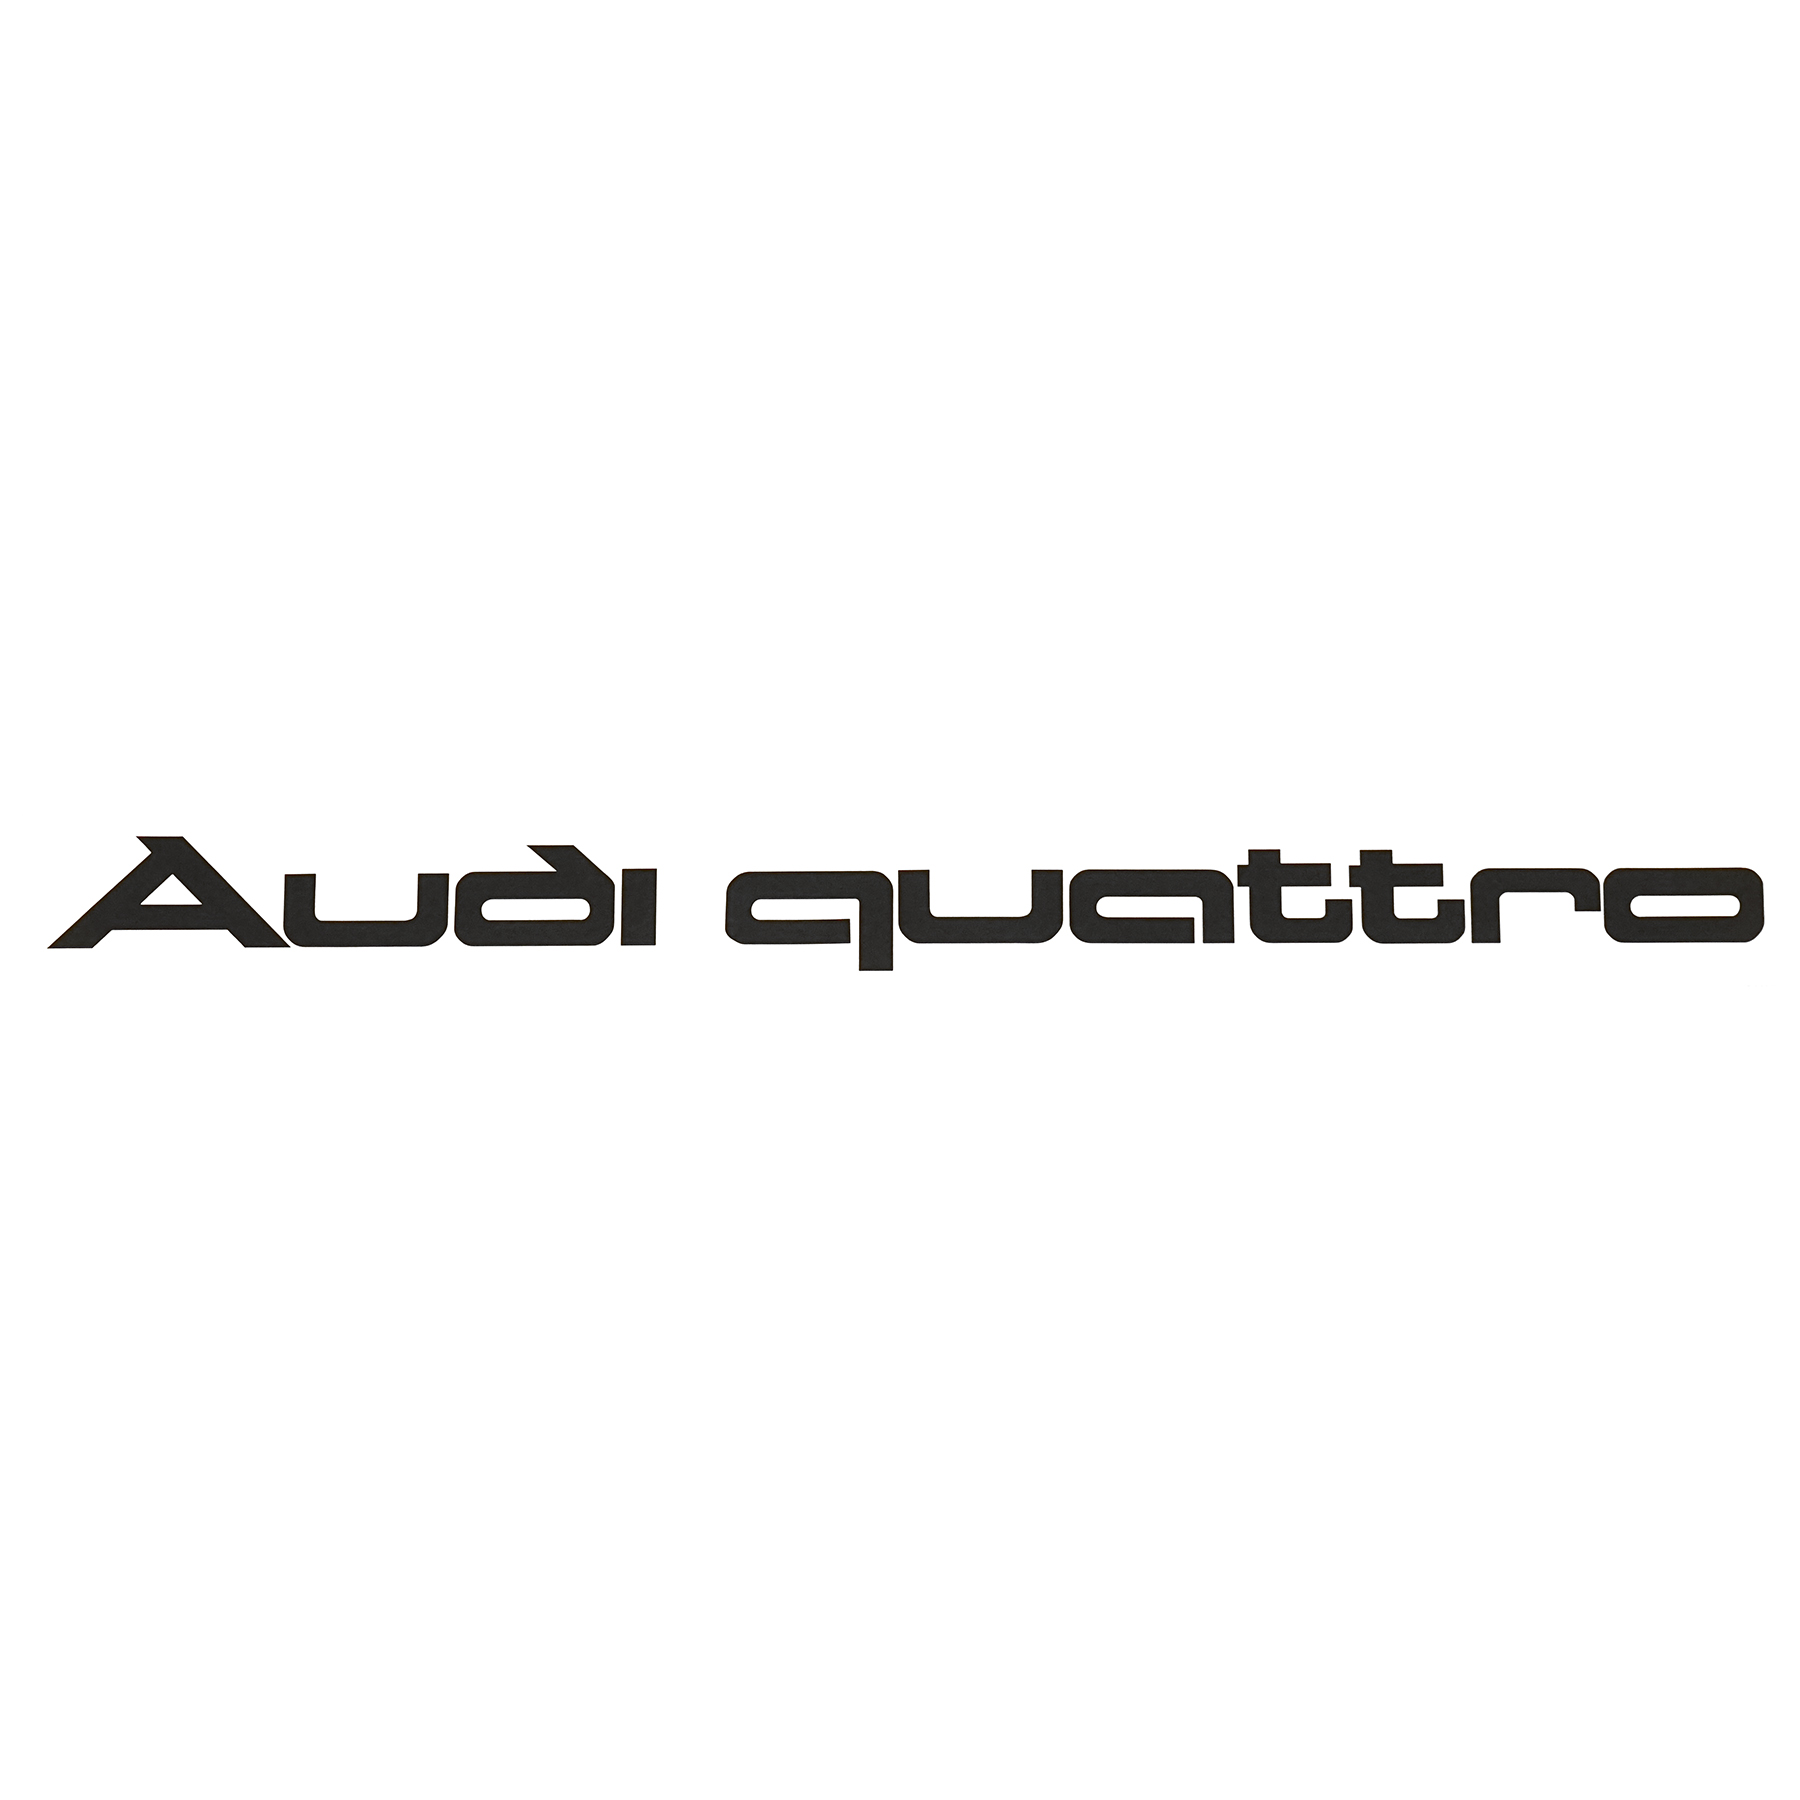 Aufkleber Audi quattro Logo Frontscheibe Schriftzug Dekorfolie schwarz  A16-2268